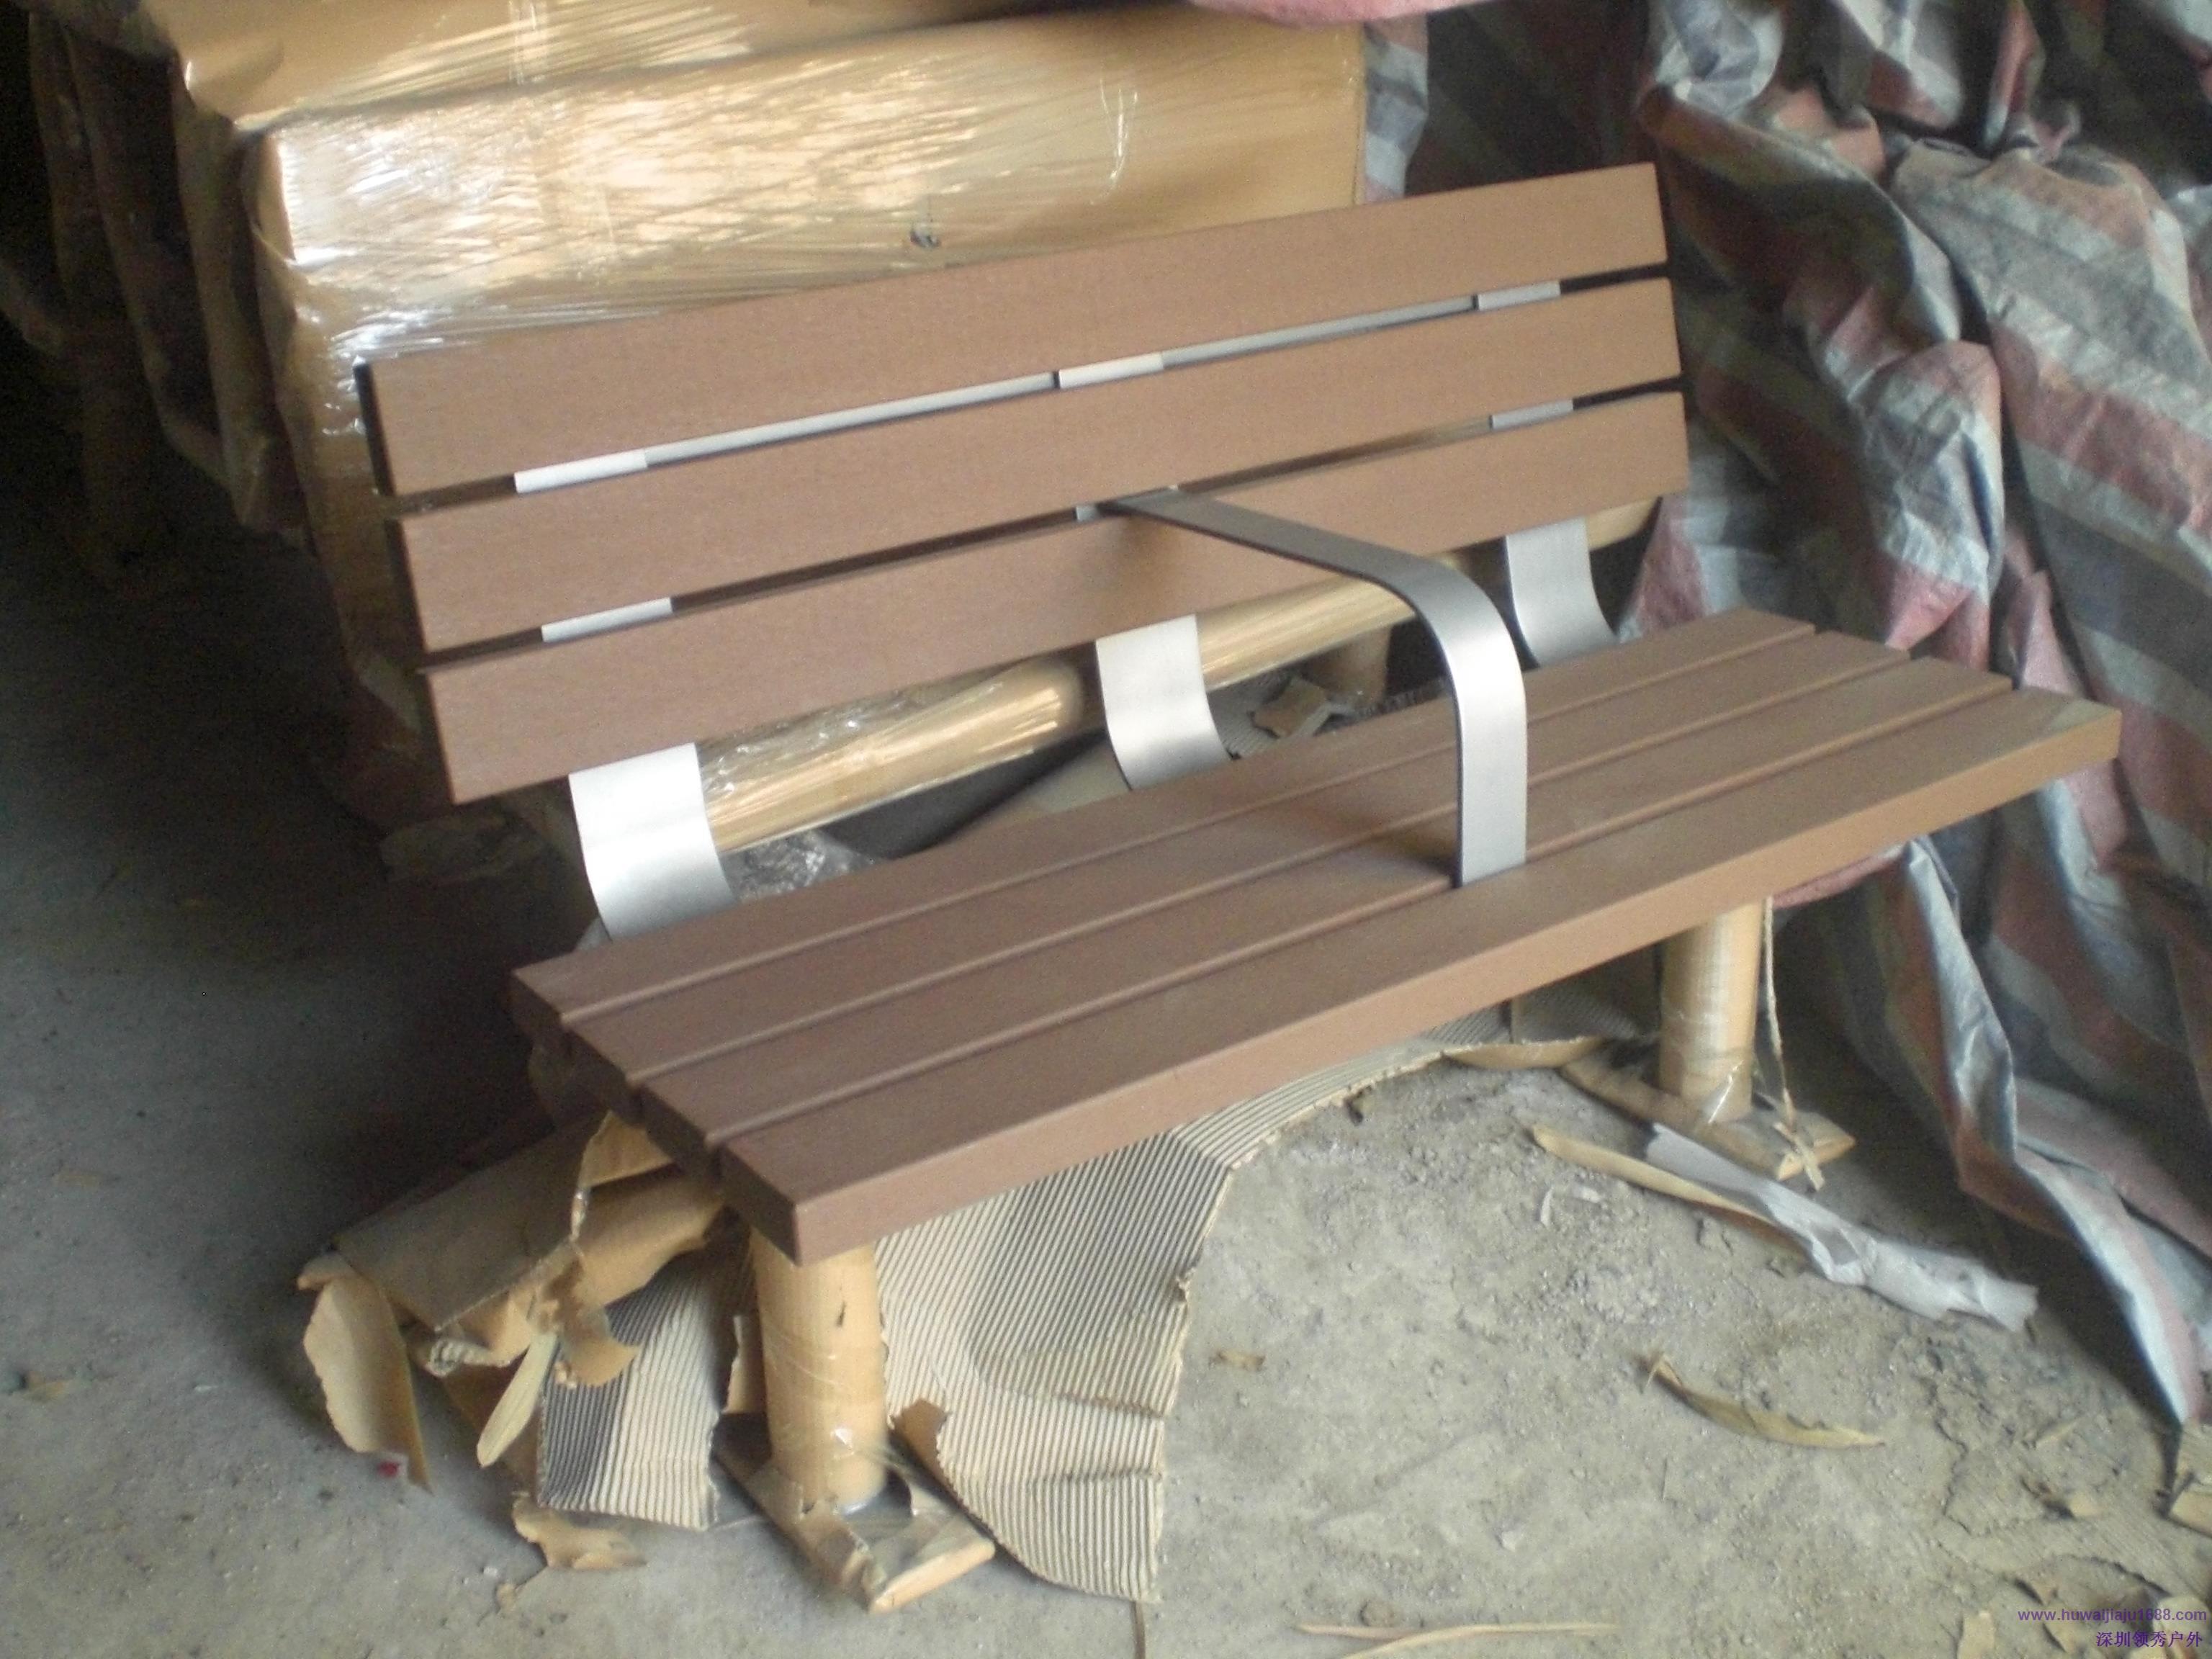 常规铸铝塑木户外休闲椅.jpg